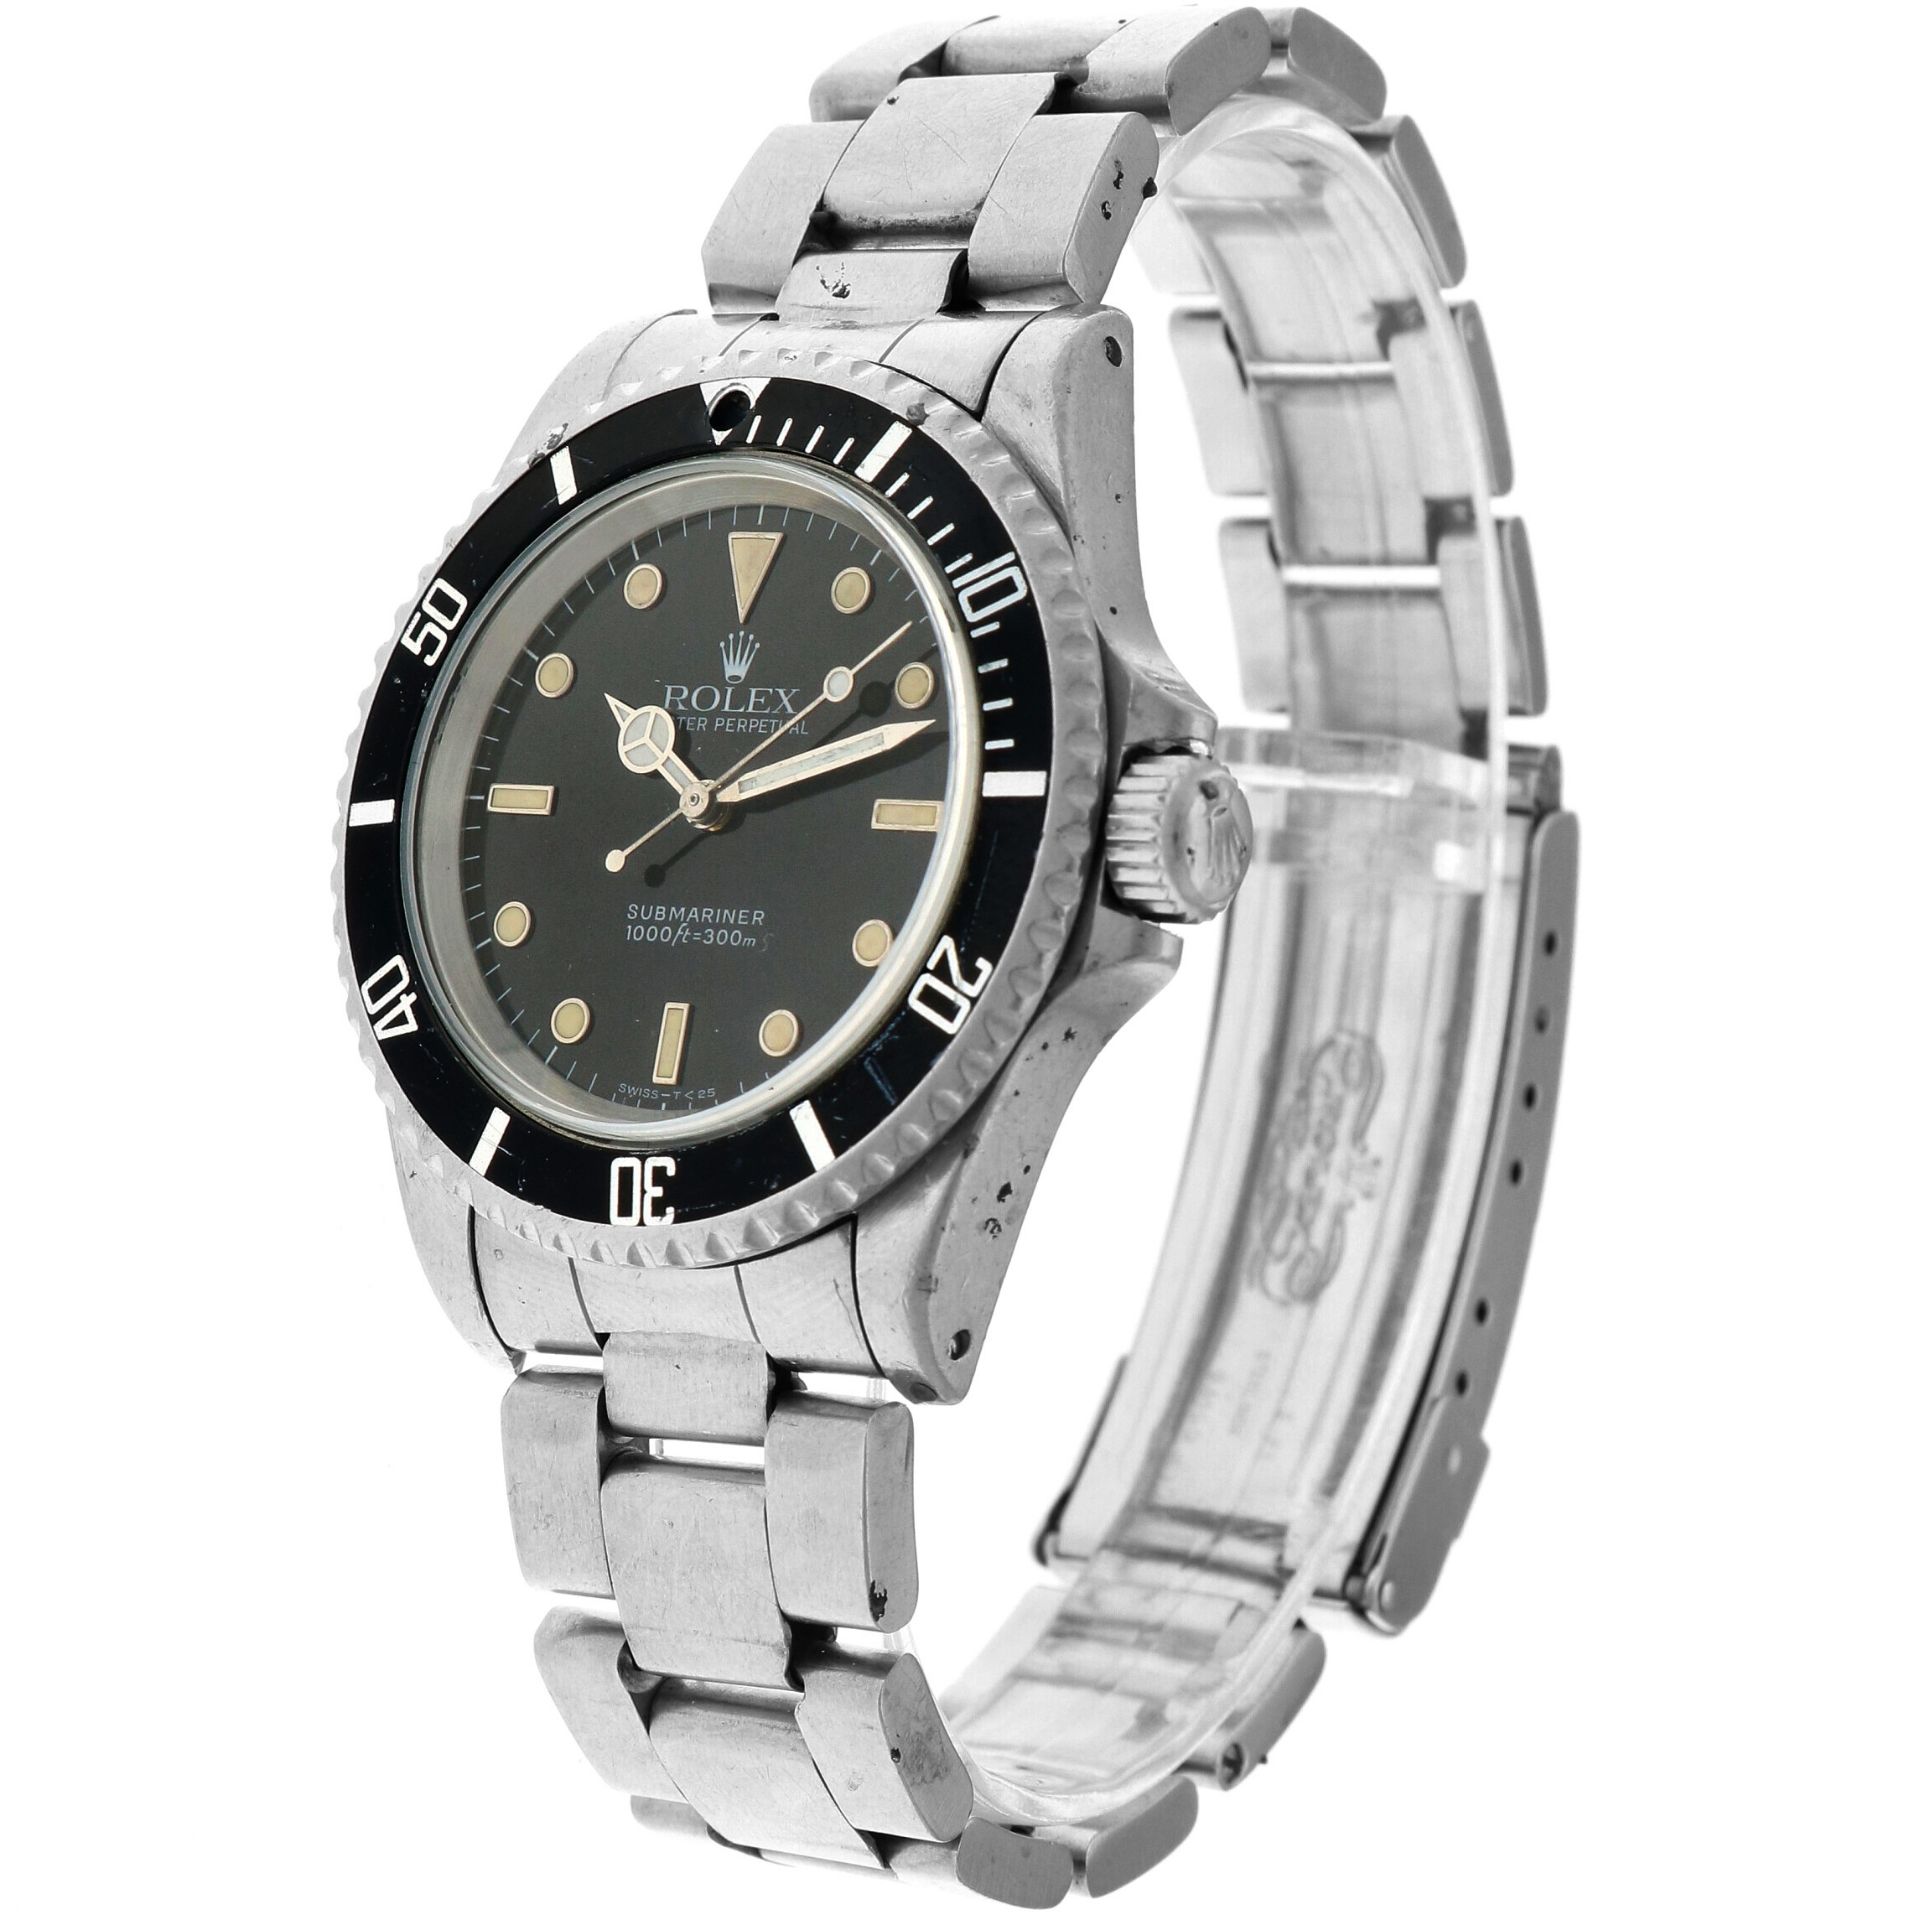 No Reserve - Rolex Submariner No Date 14060 - Men's watch - 1991. - Bild 2 aus 5